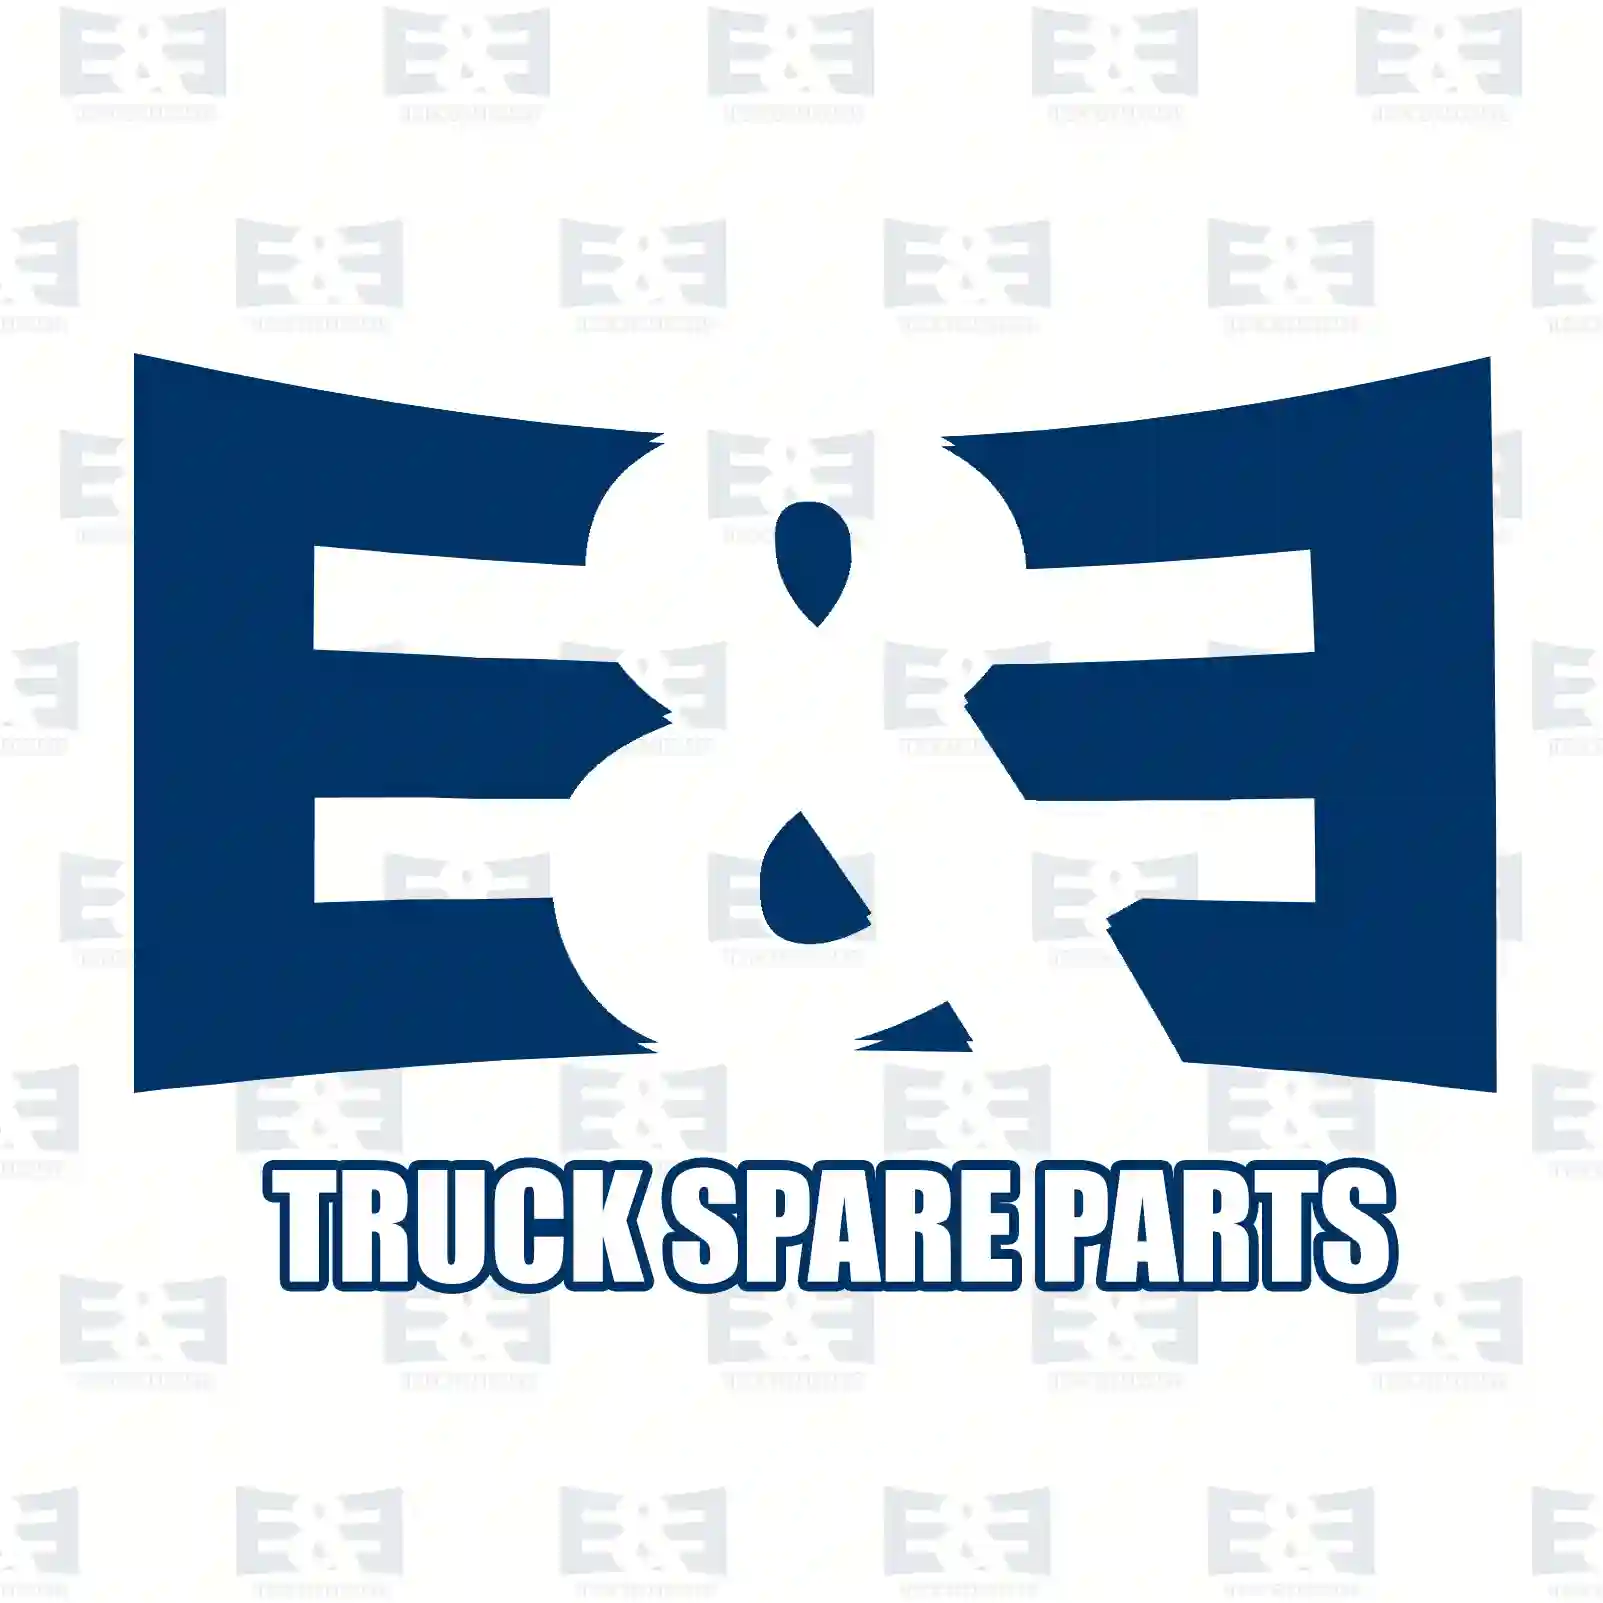 Unit injector, 2E2286560, 1805344 ||  2E2286560 E&E Truck Spare Parts | Truck Spare Parts, Auotomotive Spare Parts Unit injector, 2E2286560, 1805344 ||  2E2286560 E&E Truck Spare Parts | Truck Spare Parts, Auotomotive Spare Parts